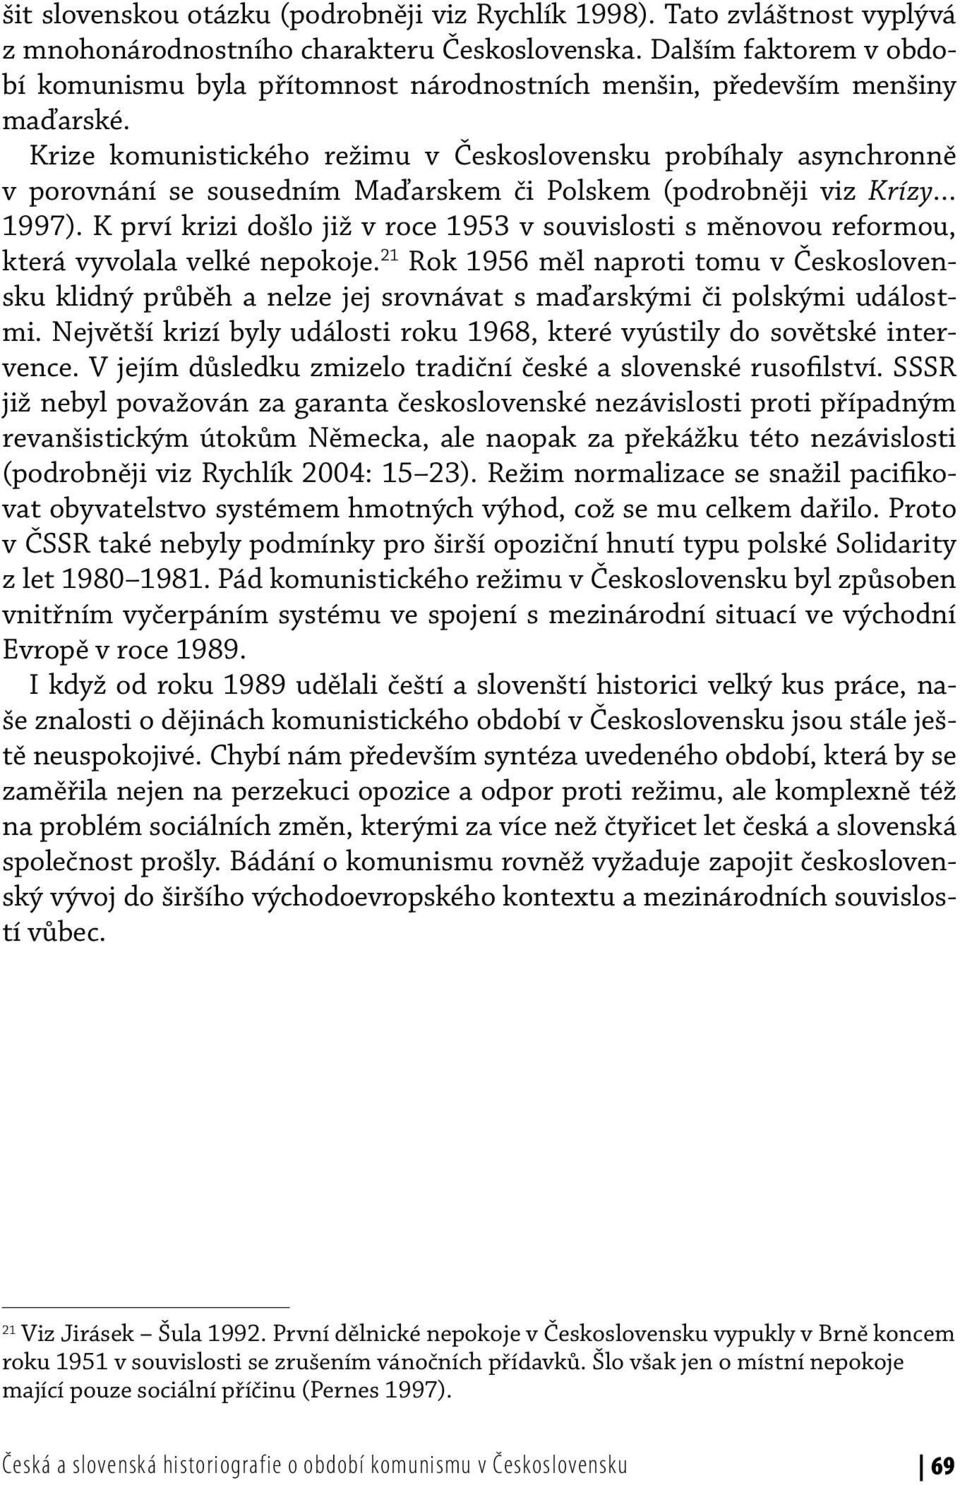 Krize komunistického režimu v Československu probíhaly asynchronně v porovnání se sousedním Maďarskem či Polskem (podrobněji viz Krízy 1997).